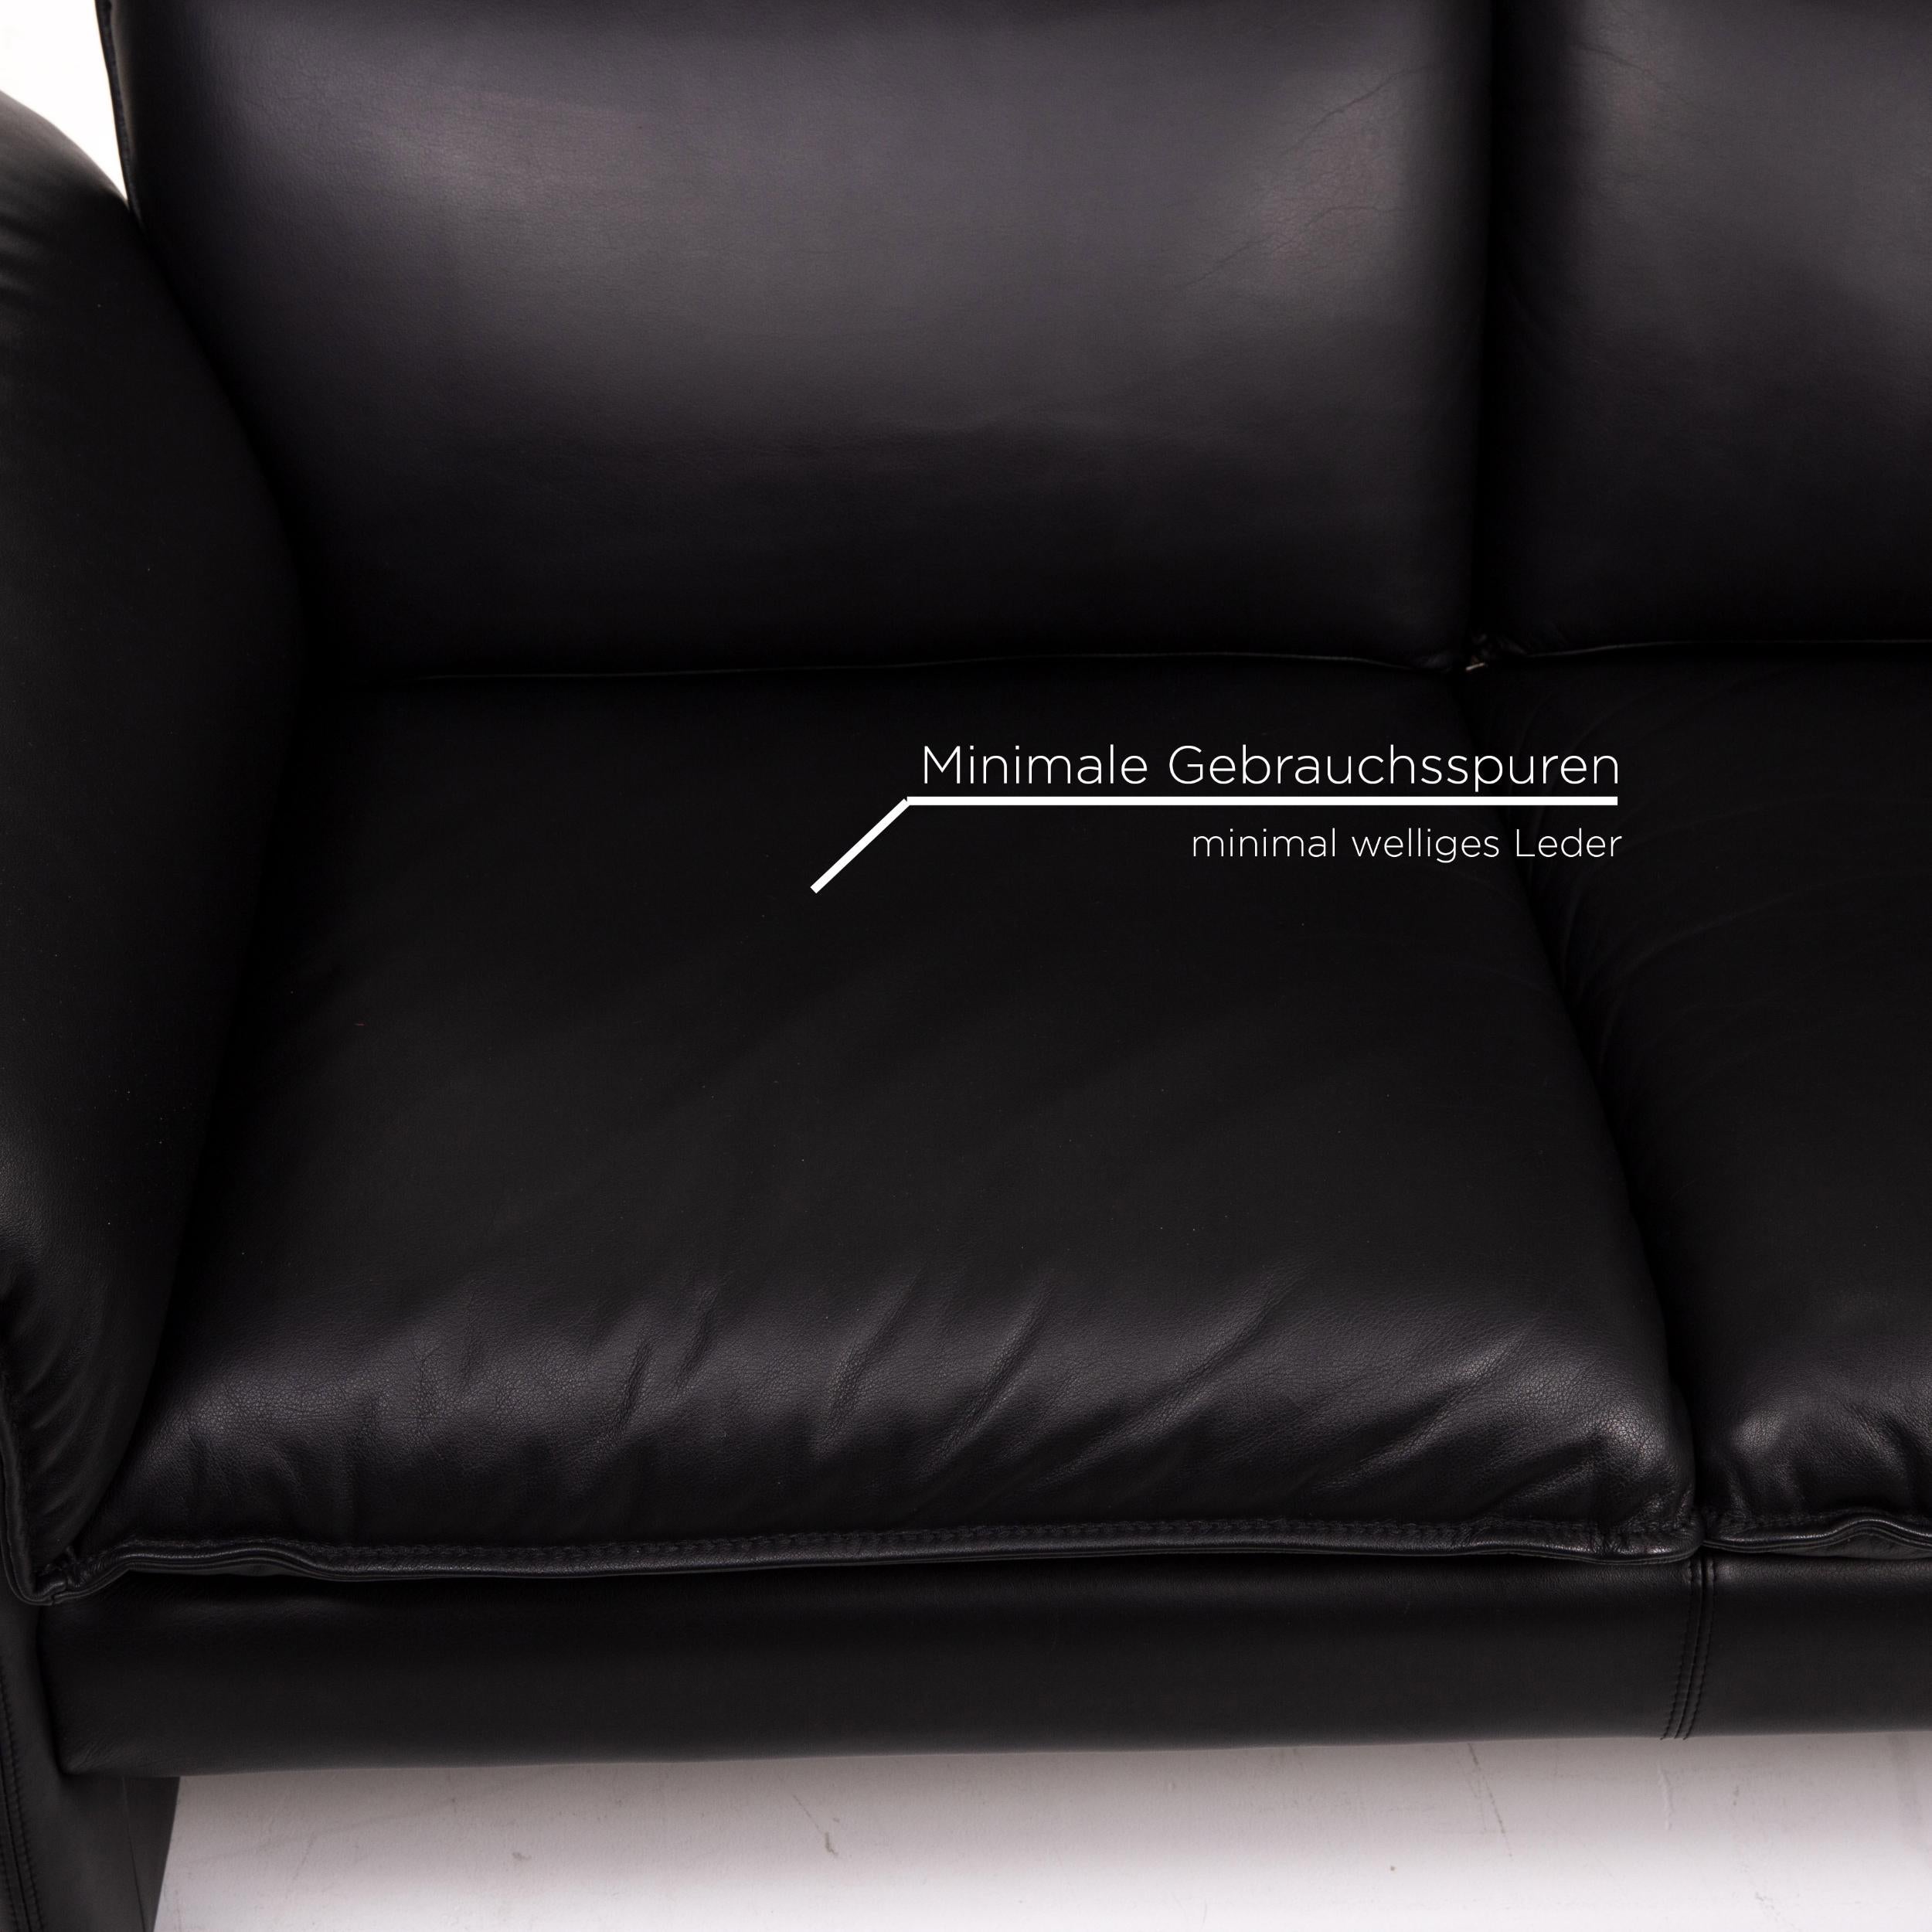 Three-Point Scala Leather Sofa Set Black 1 Three-Seat 1 Two-Seat 1